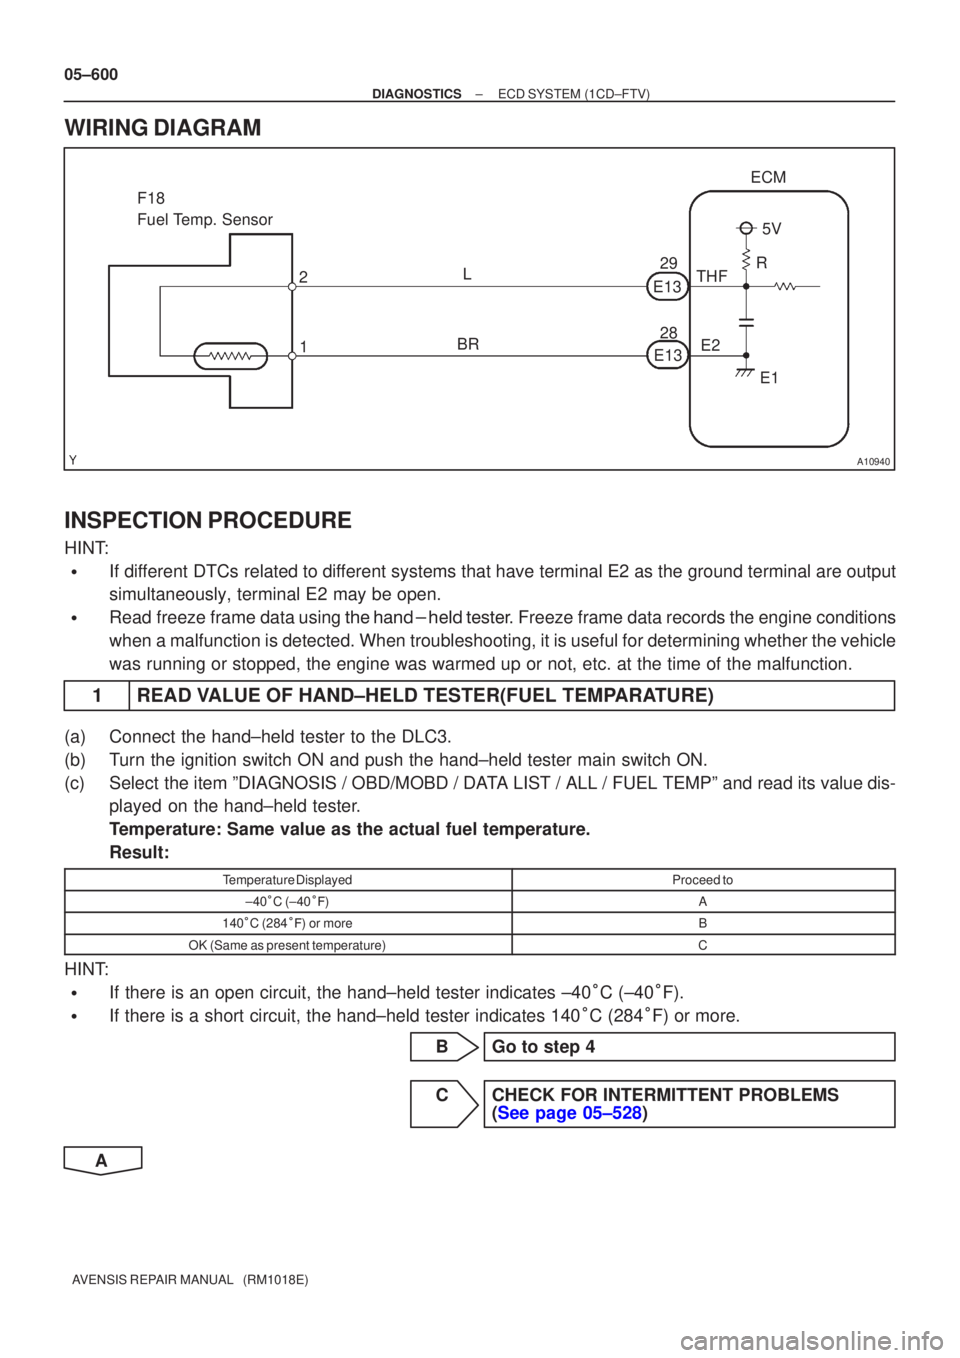 TOYOTA AVENSIS 2005  Service Repair Manual A10940
ECM
THF E2
F18 
Fuel Temp. Sensor
1
2
5V
R
E1
E13
E13 28 29
L
BR
05±600
±
DIAGNOSTICS ECD SYSTEM(1CD±FTV)
AVENSIS REPAIR MANUAL   (RM1018E)
WIRING DIAGRAM
INSPECTION PROCEDURE
HINT:
If diff